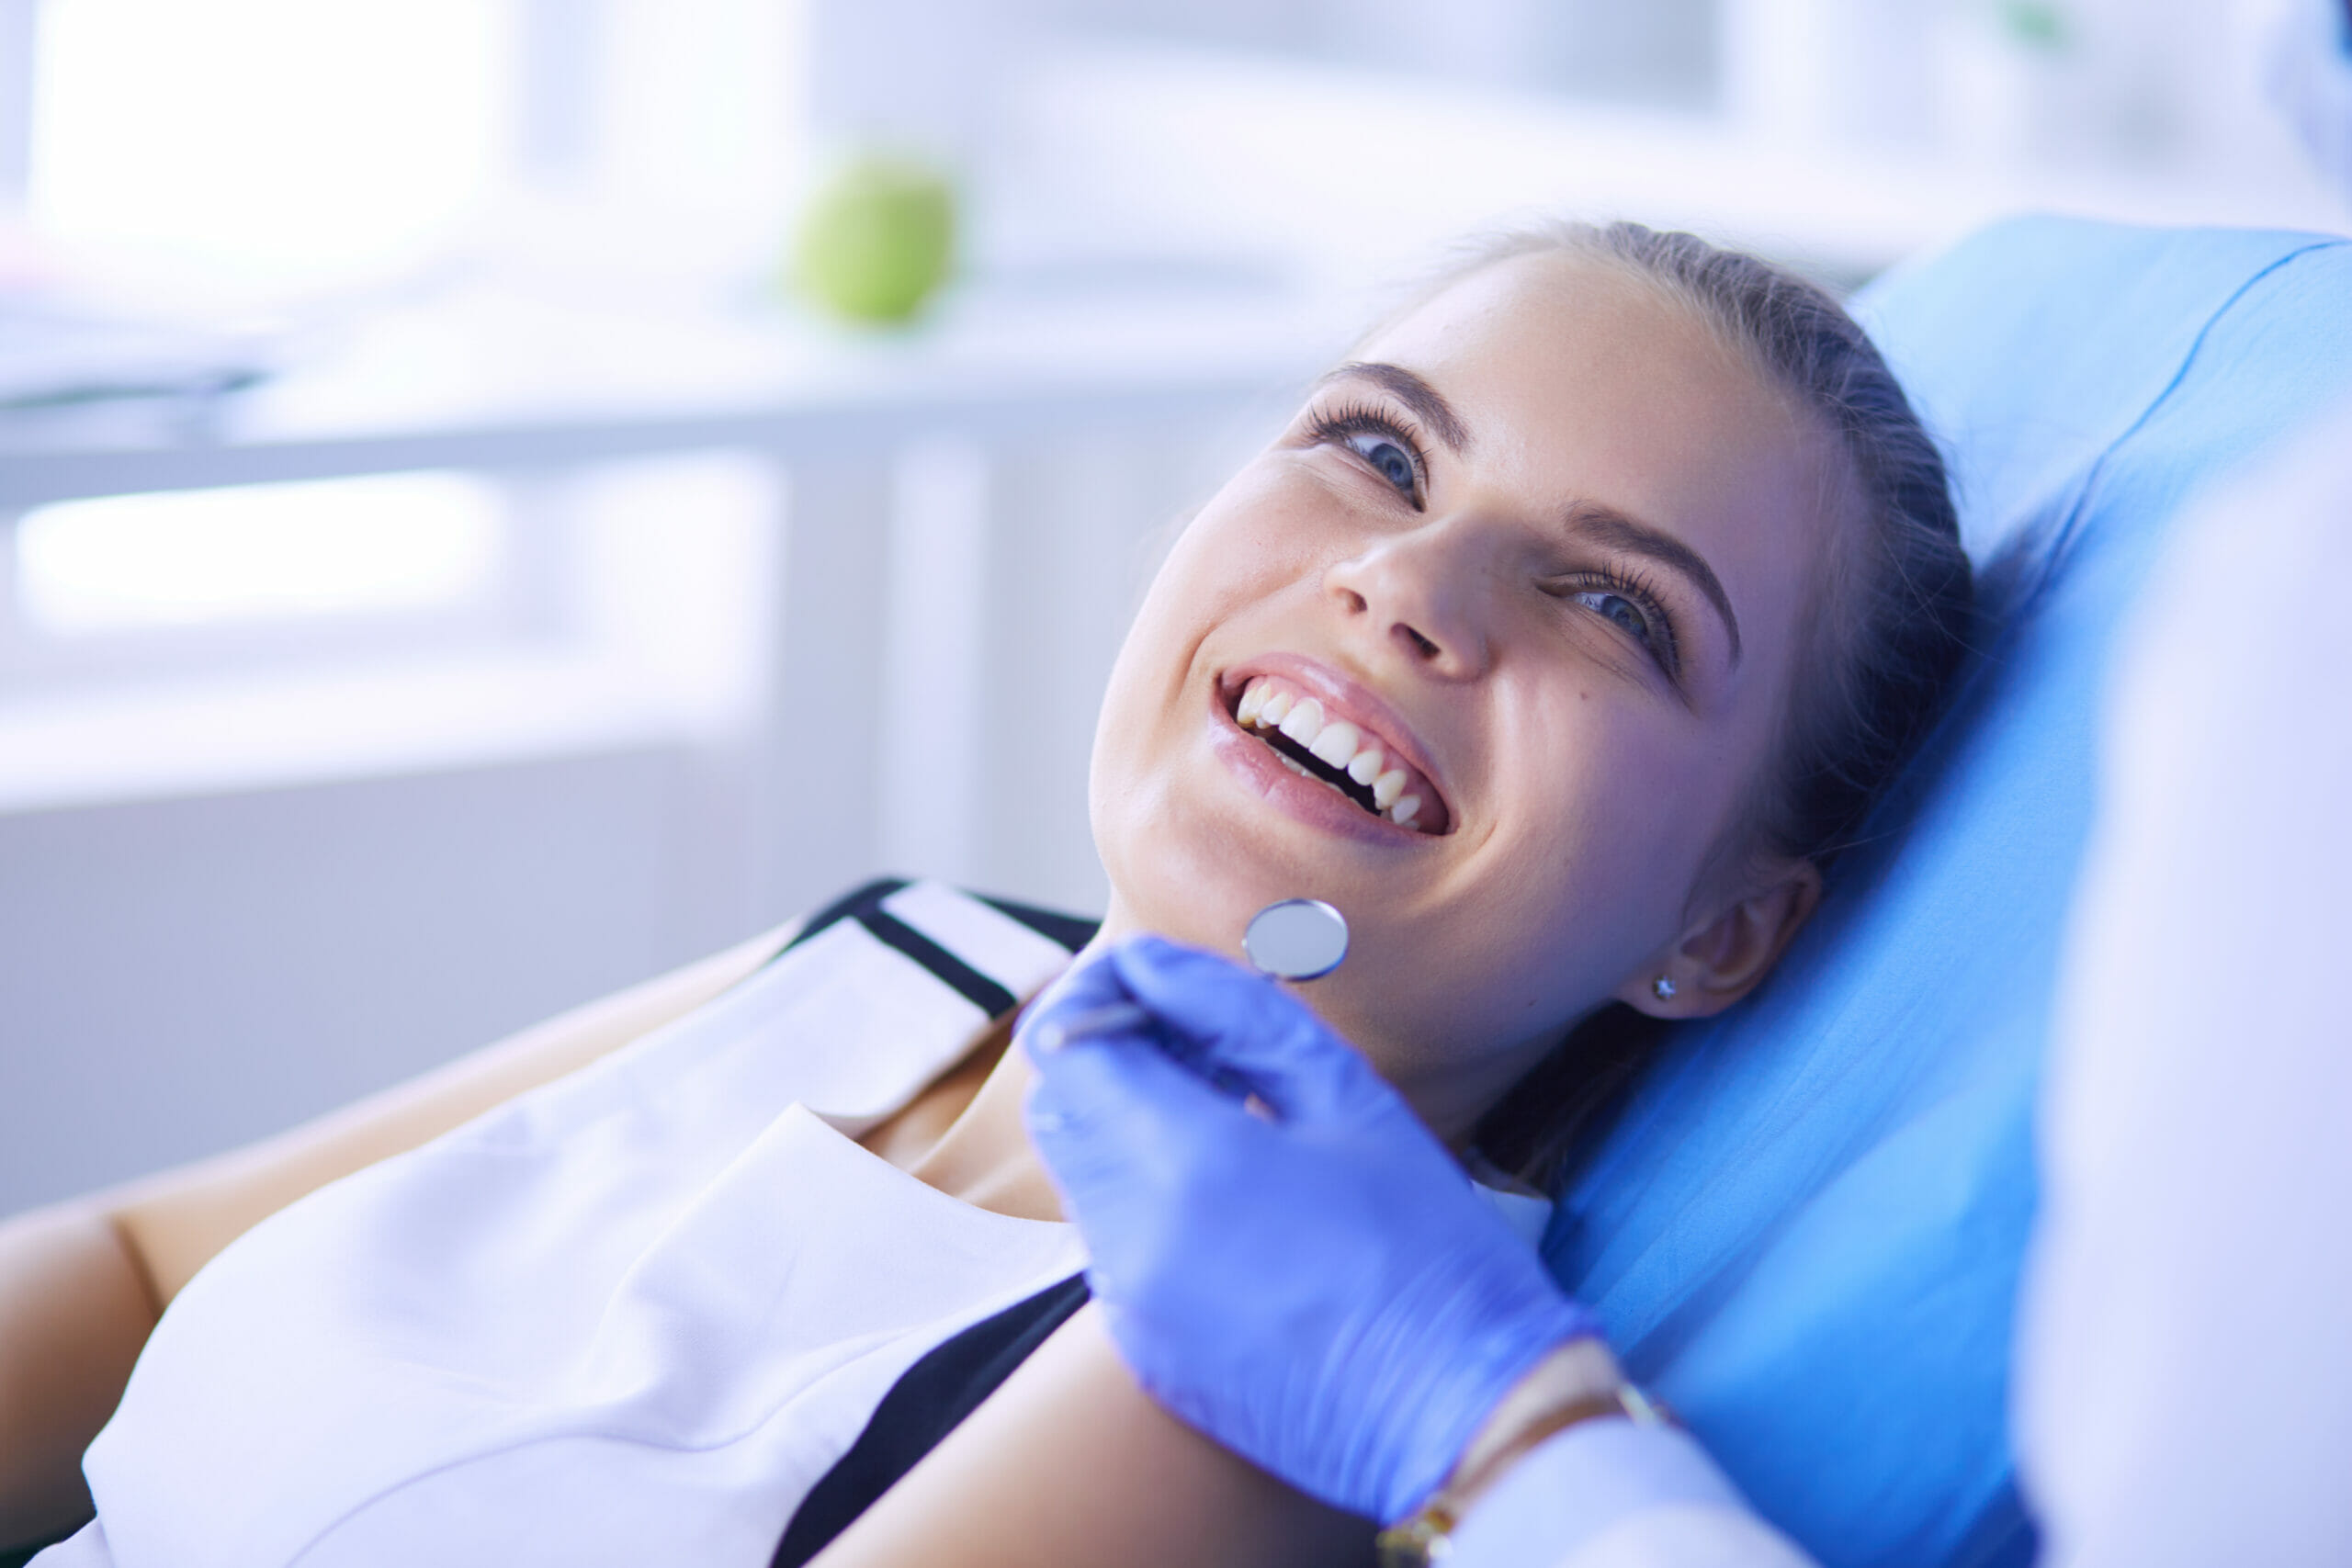 Routine Dentist Visits